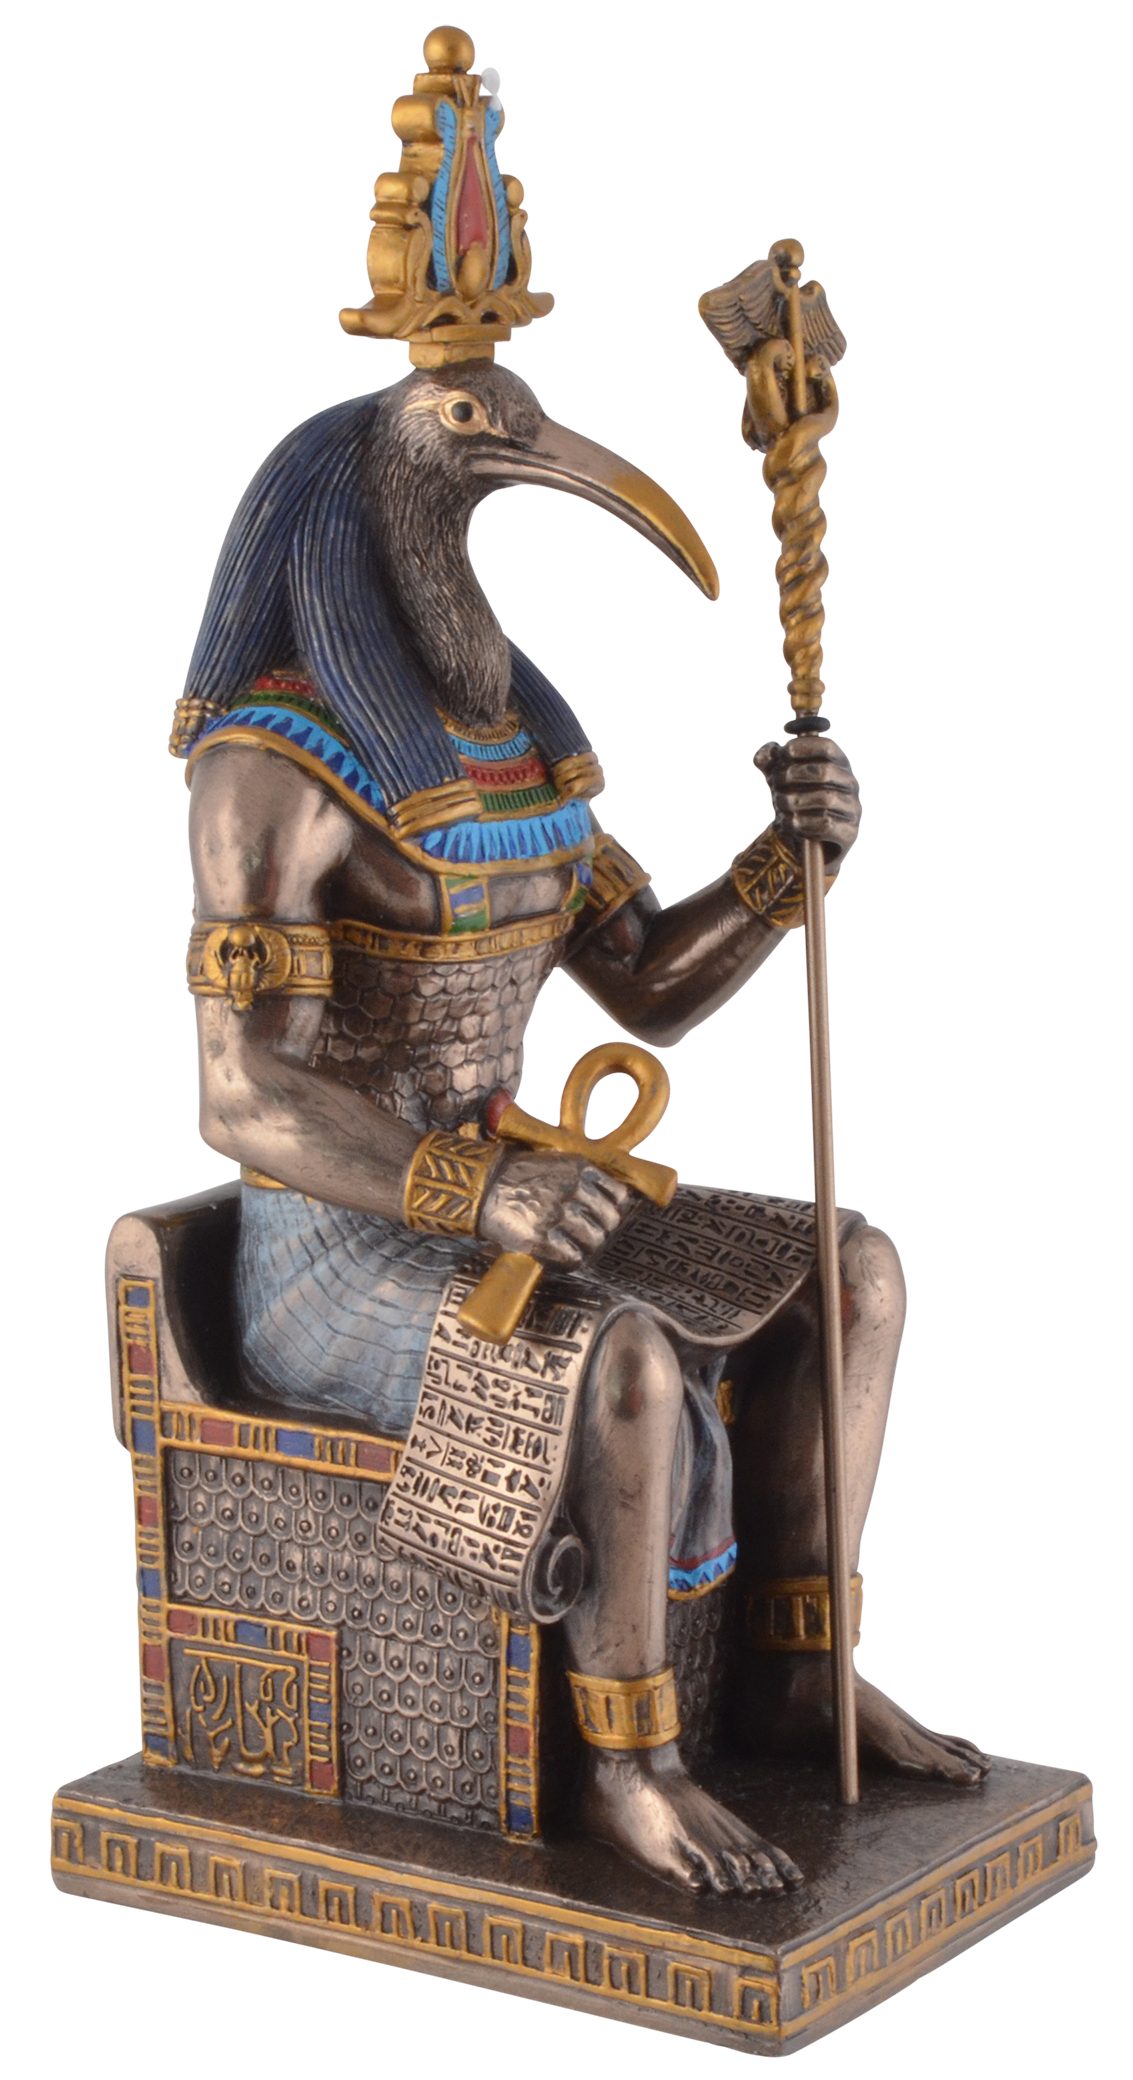 Vogler direct Gmbh Dekofigur Ägyptischer Gott Thoth, Veronesedesign, bronziert, coloriert, Kunststein, Größe: L/B/H ca. 9x11x24cm